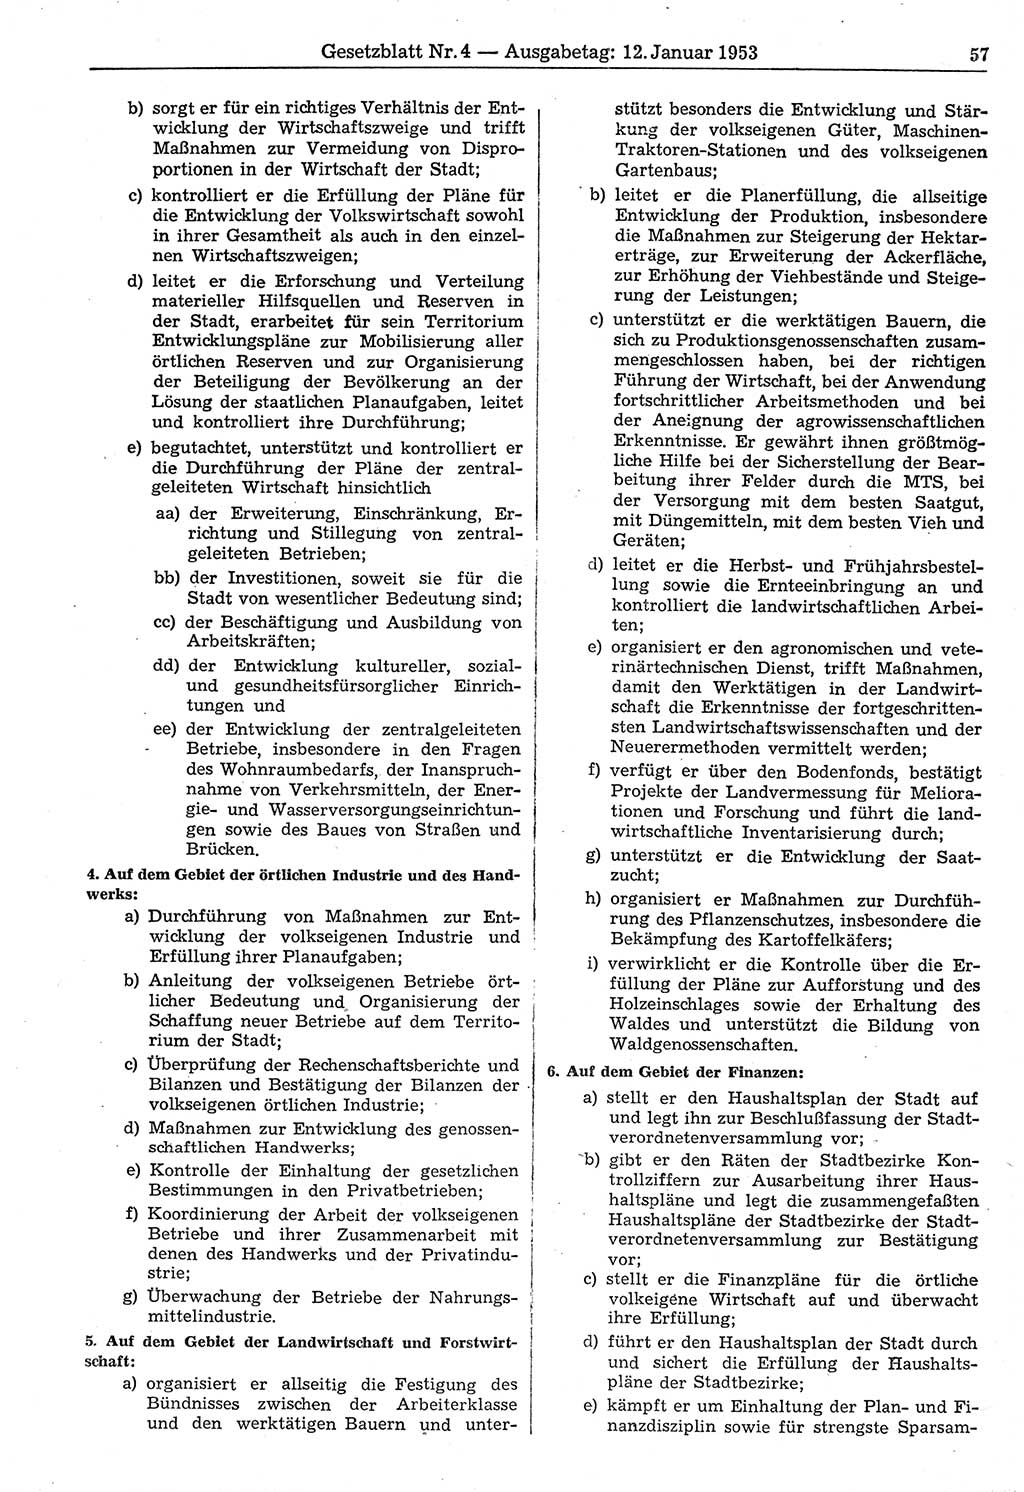 Gesetzblatt (GBl.) der Deutschen Demokratischen Republik (DDR) 1953, Seite 57 (GBl. DDR 1953, S. 57)